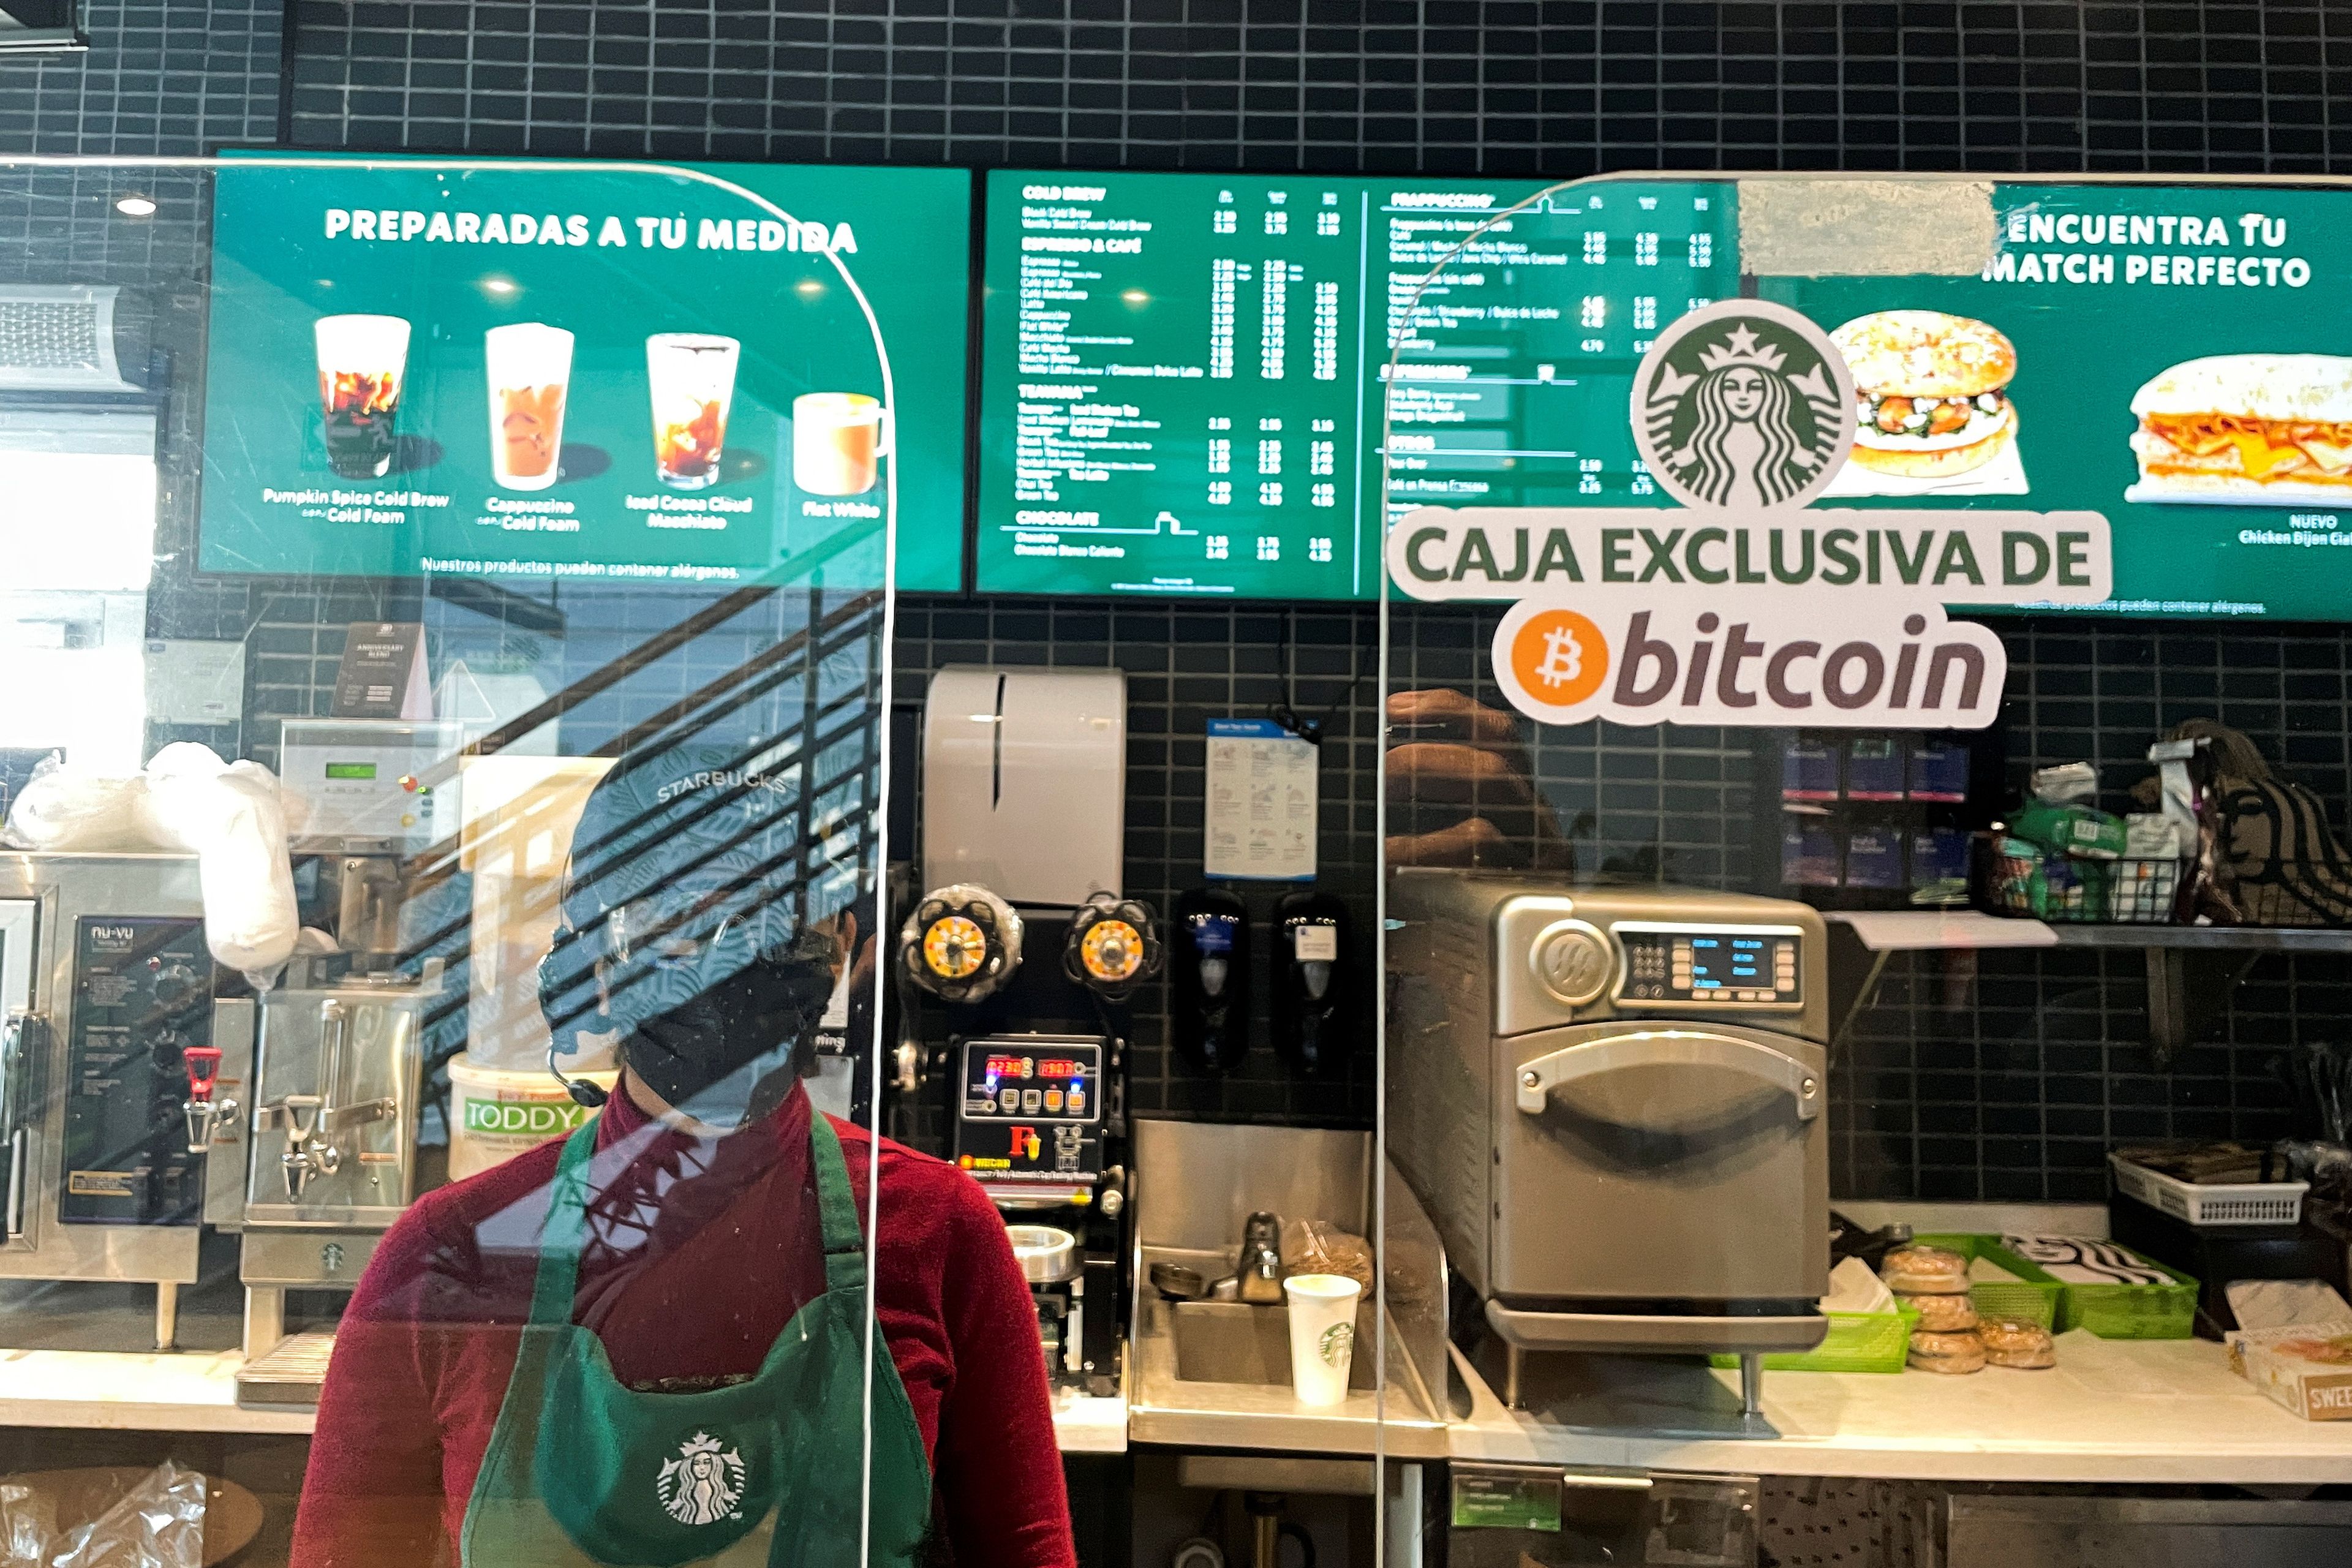 Un Starbucks en San Salvador con una caja exclusiva para bitcoin.